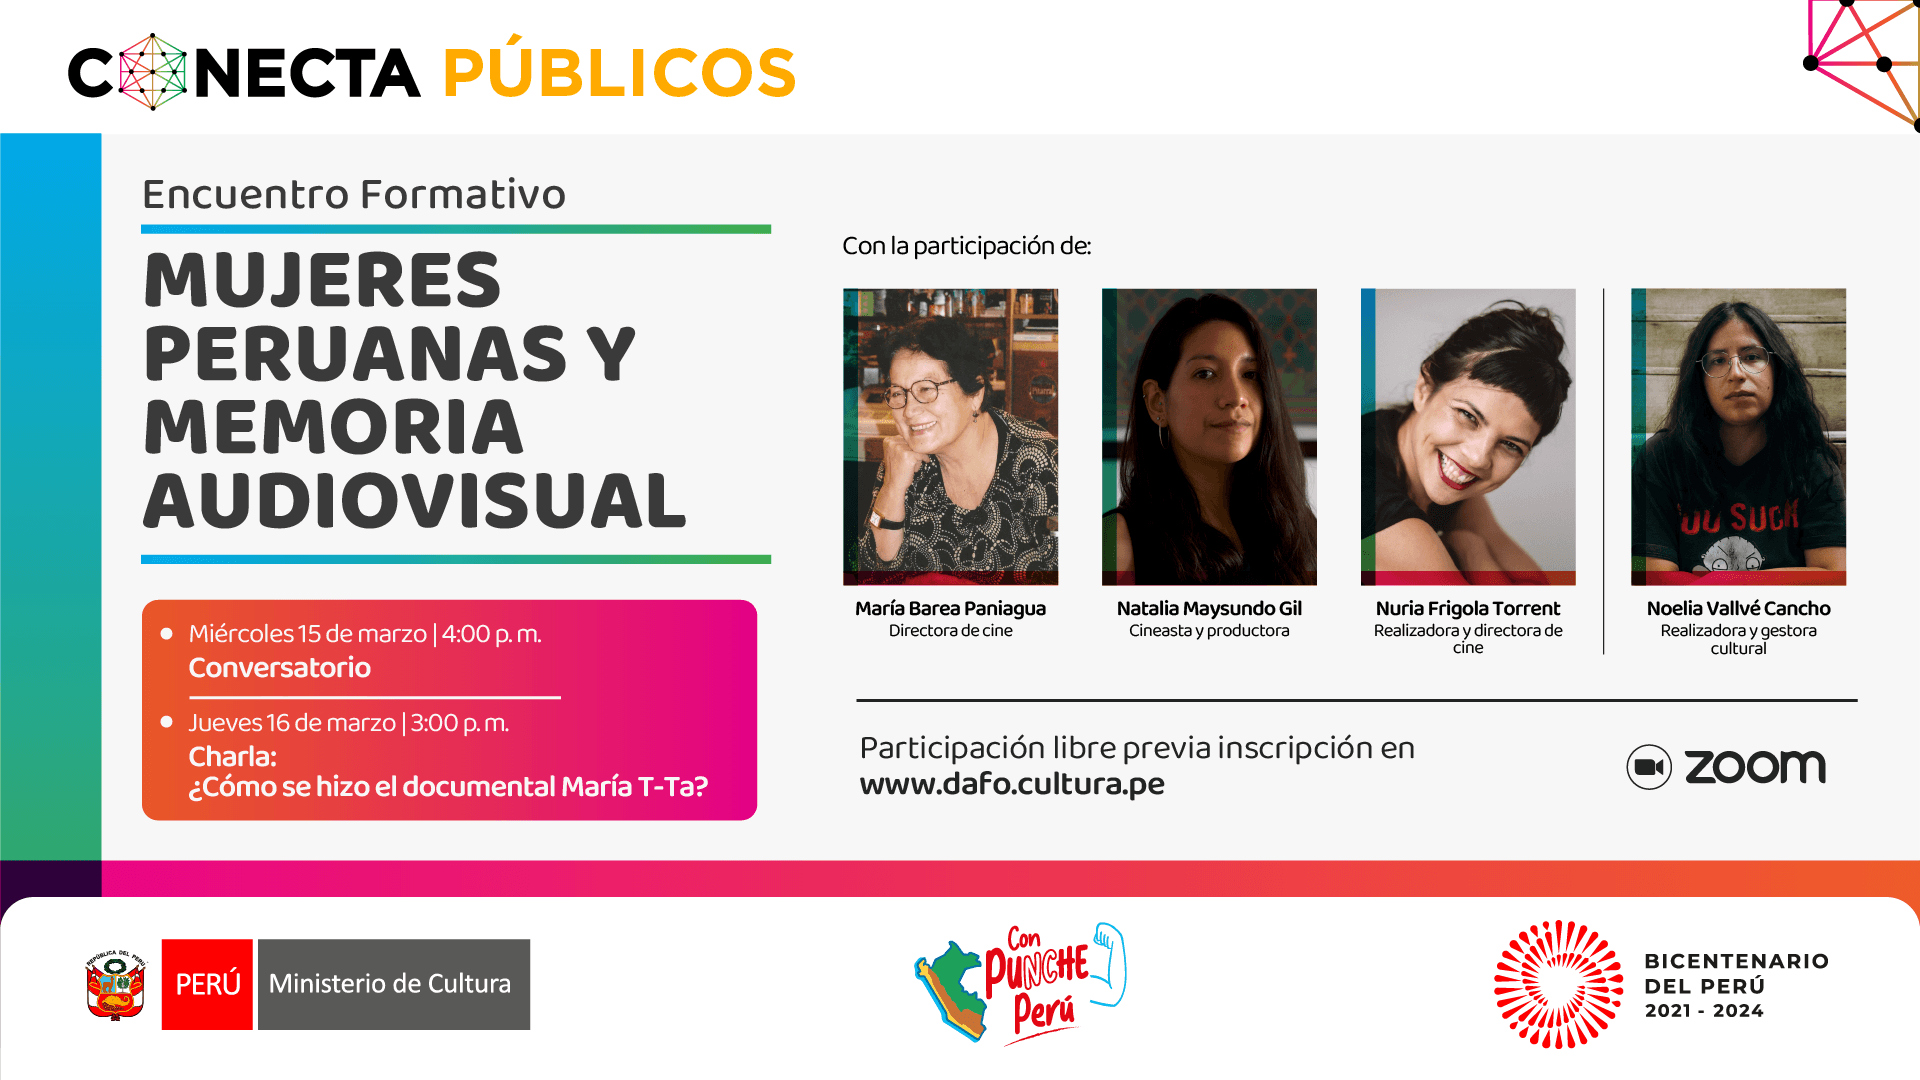 Encuentro formativo - Mujeres peruanas y memoria audiovisual